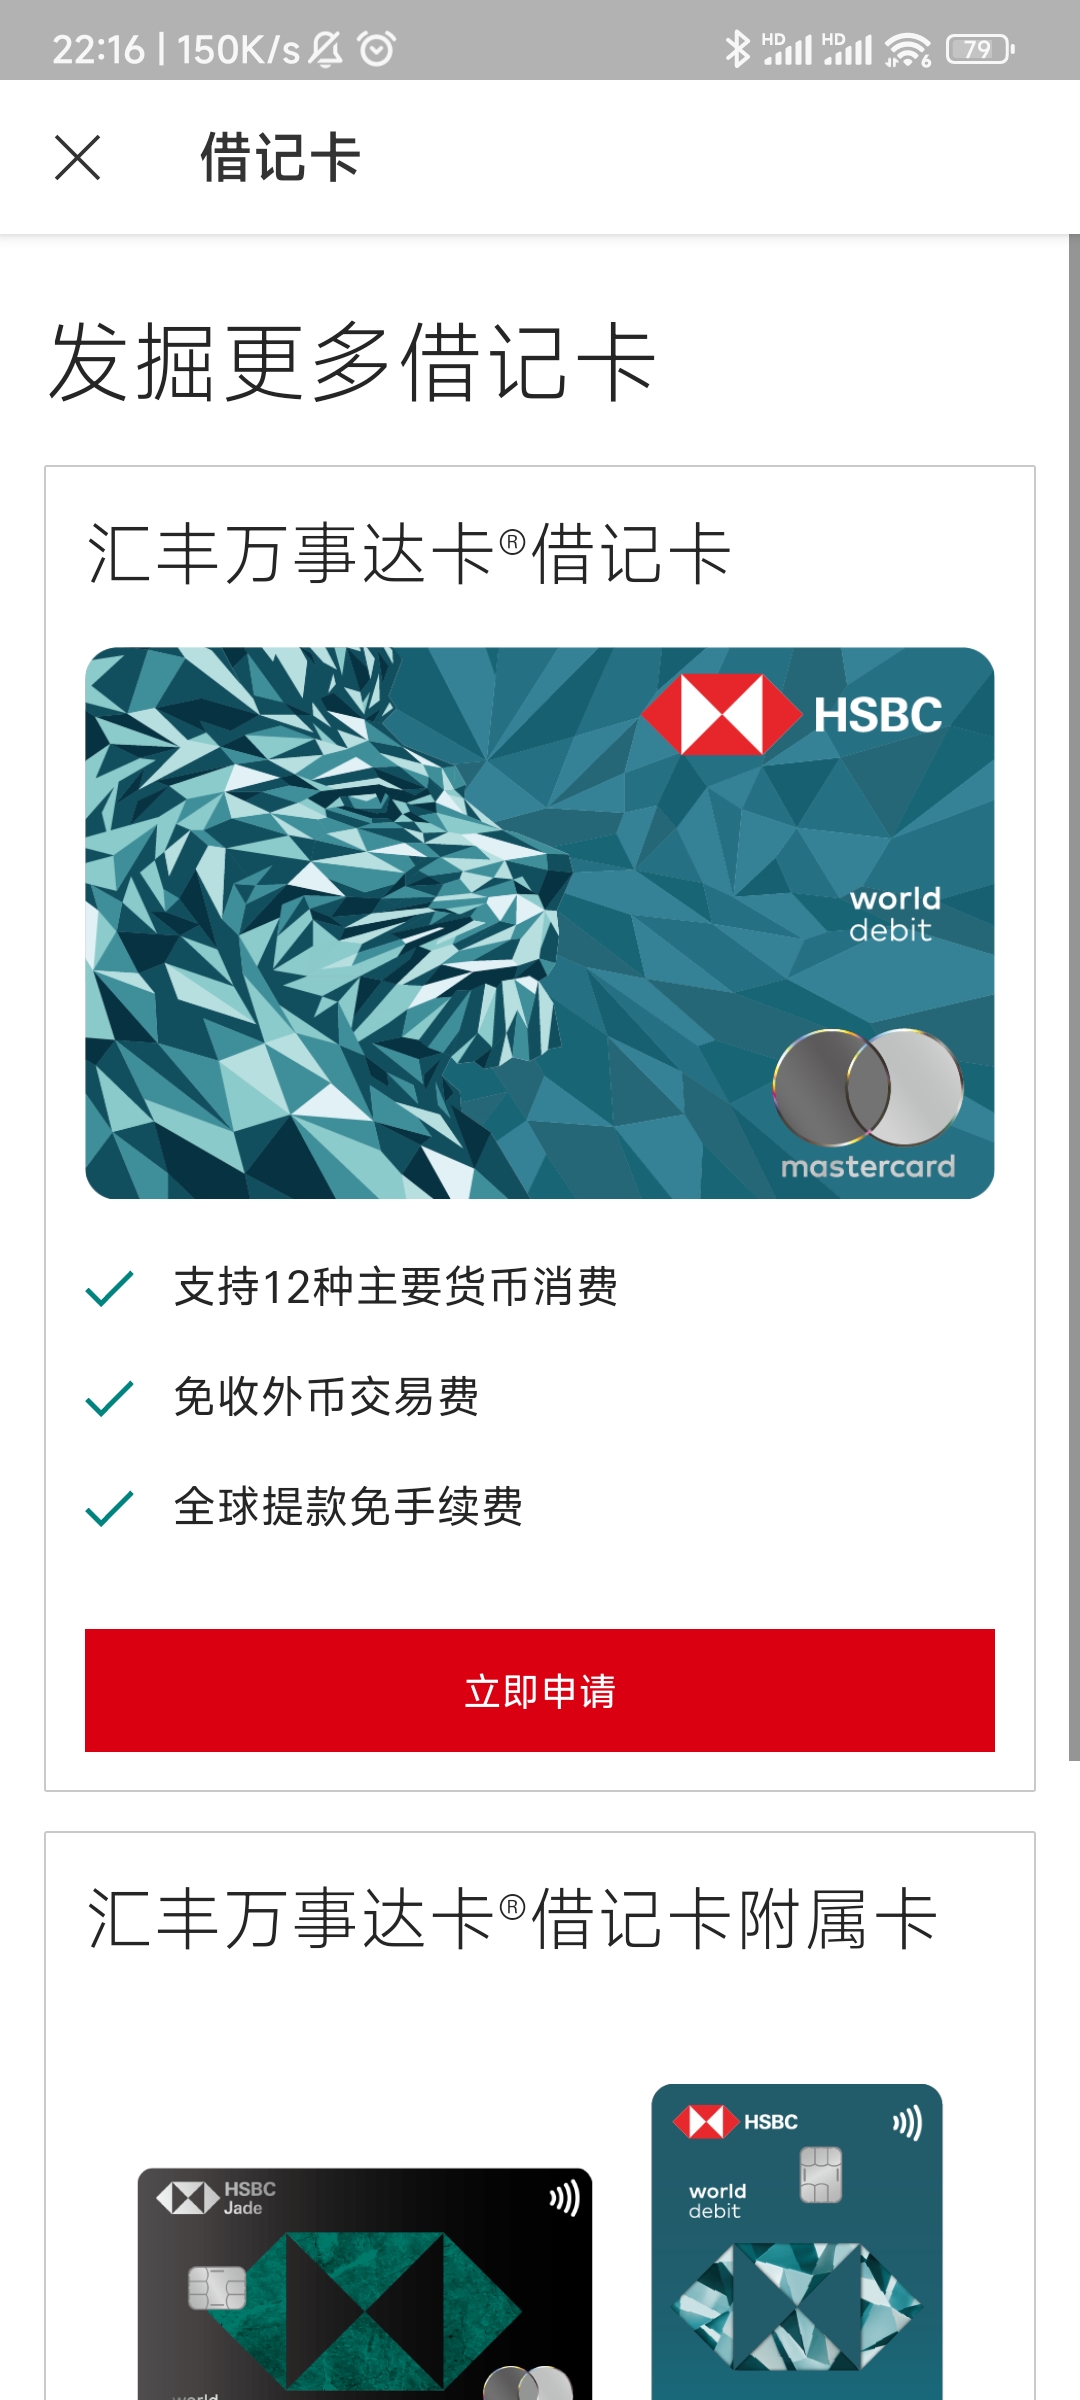 【扣账卡懒人包】HK恒生扣账卡使用说明书，本卡有1.95%的货币转换费，需要非常注意。